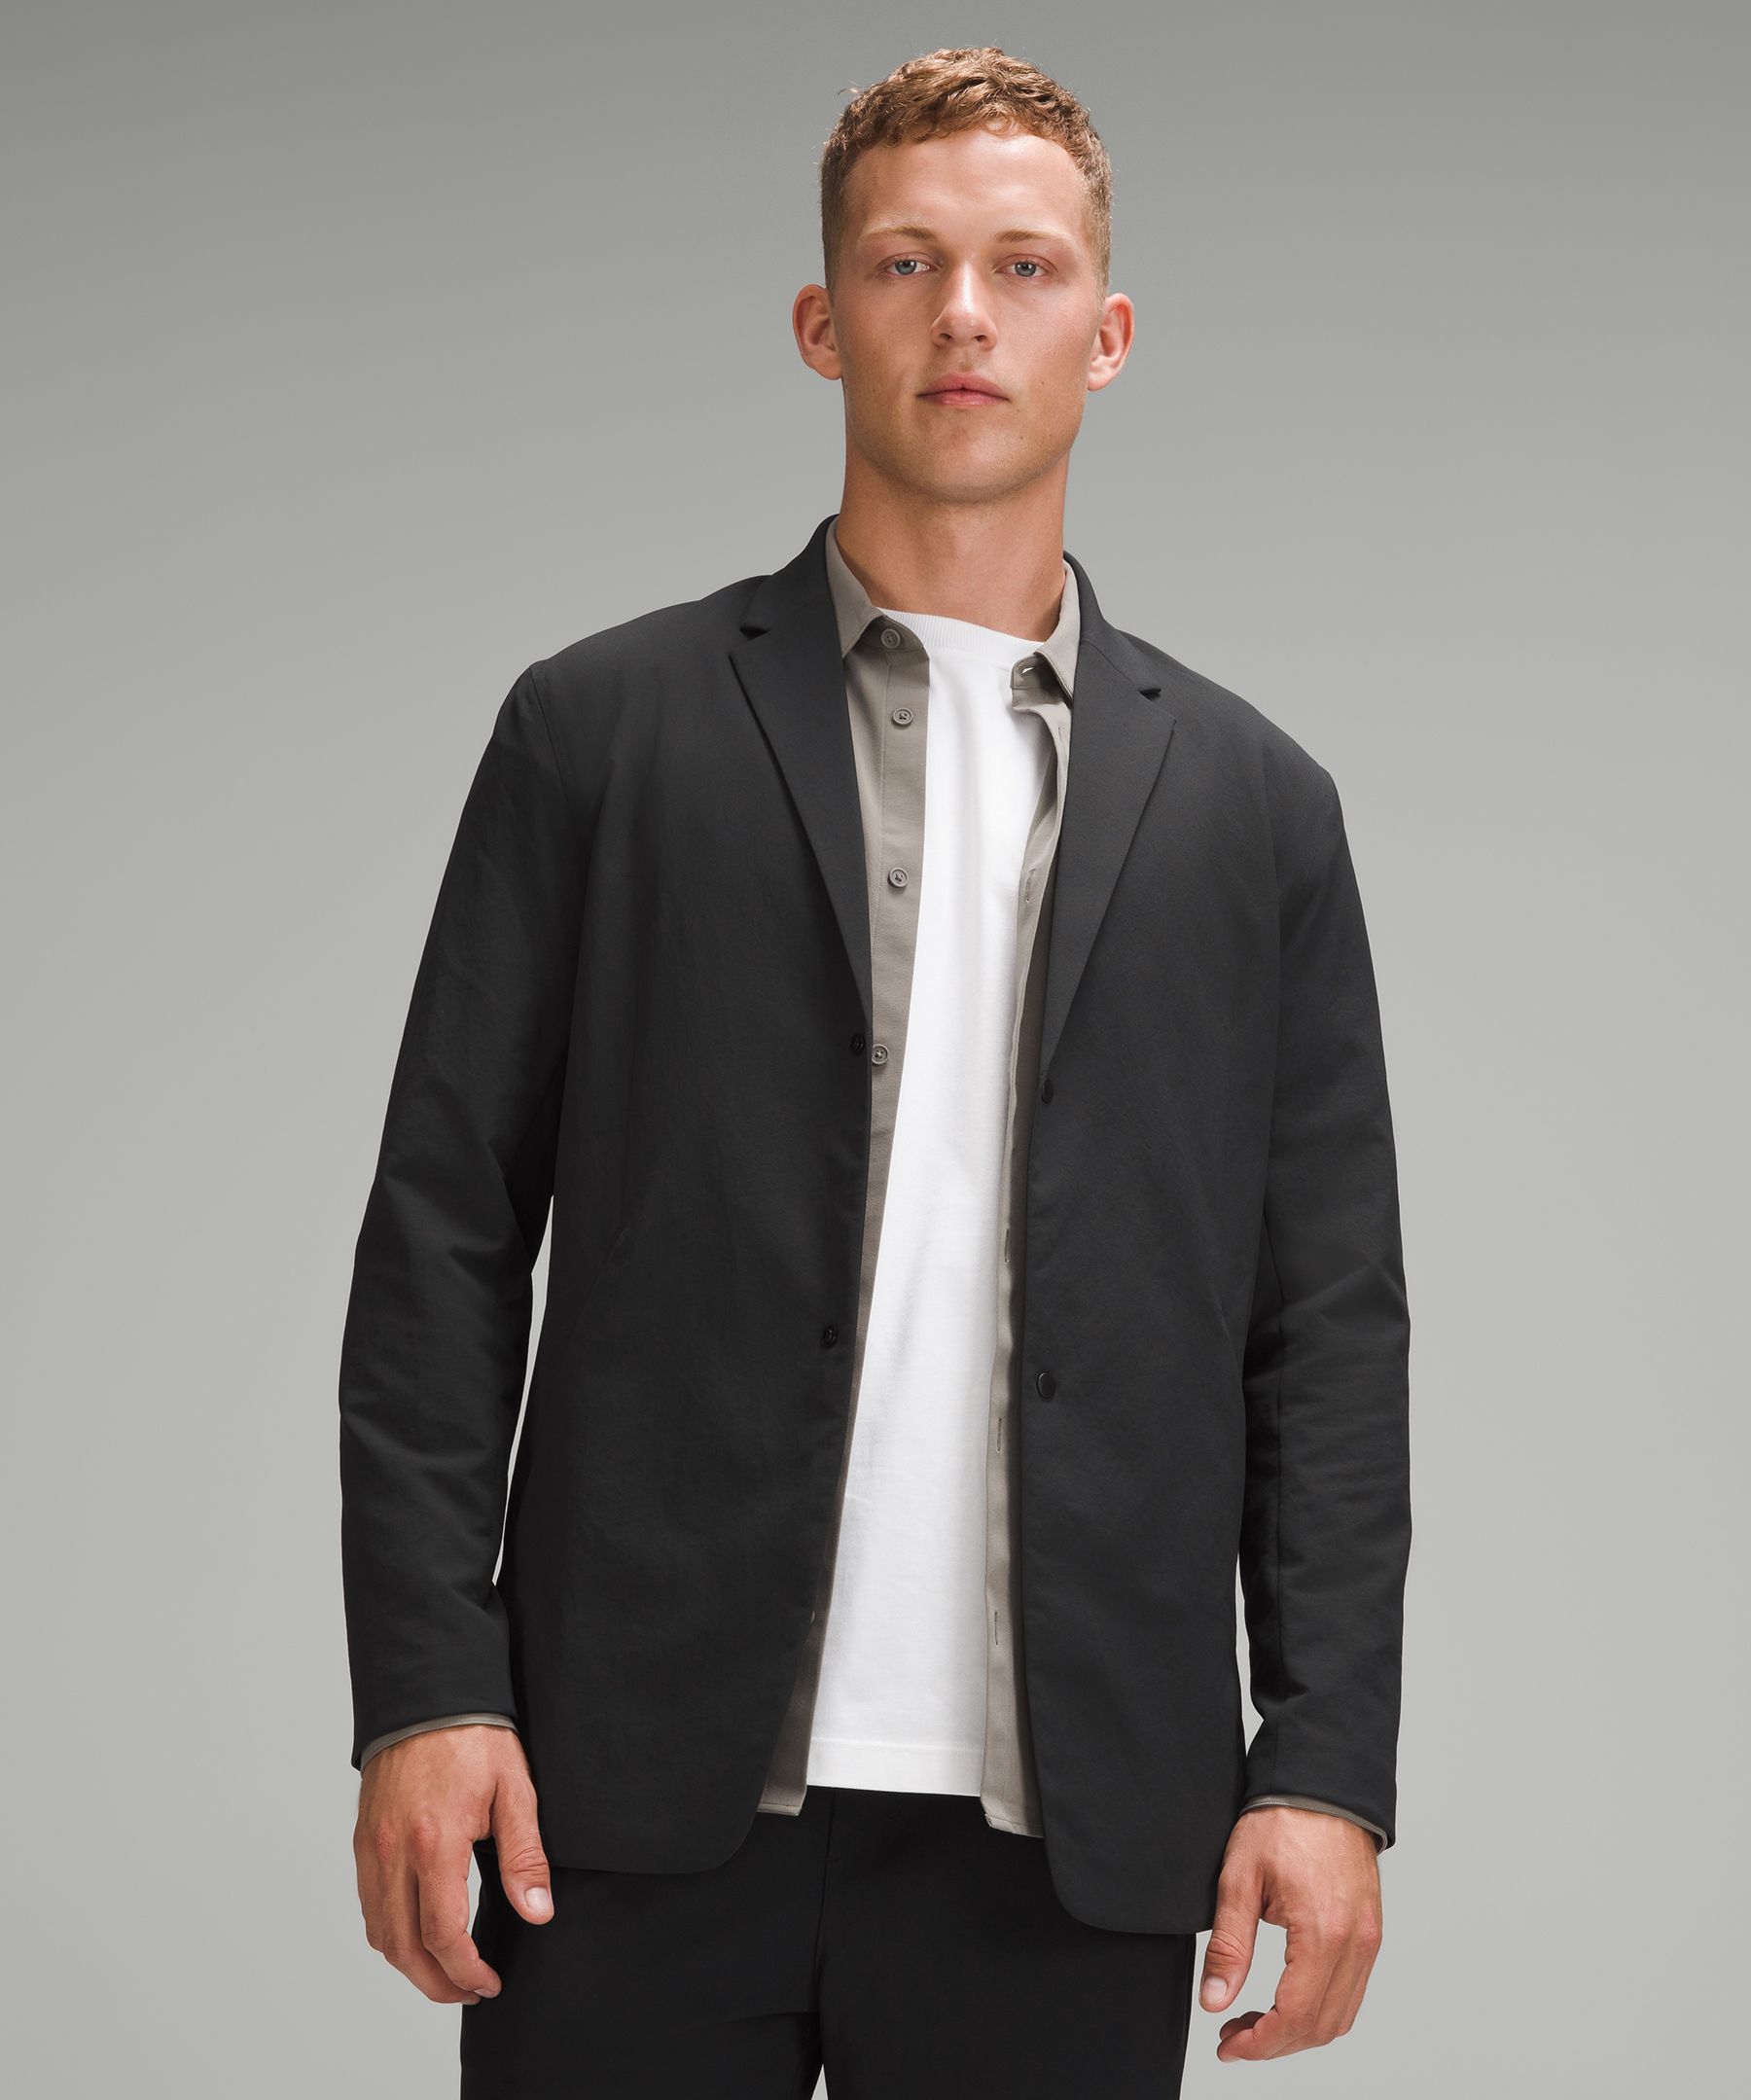 lululemon athletica, Jackets & Coats, Rare Lululemon Black Urbanite Moto  Asymmetrical Blazer Jacket Size 4